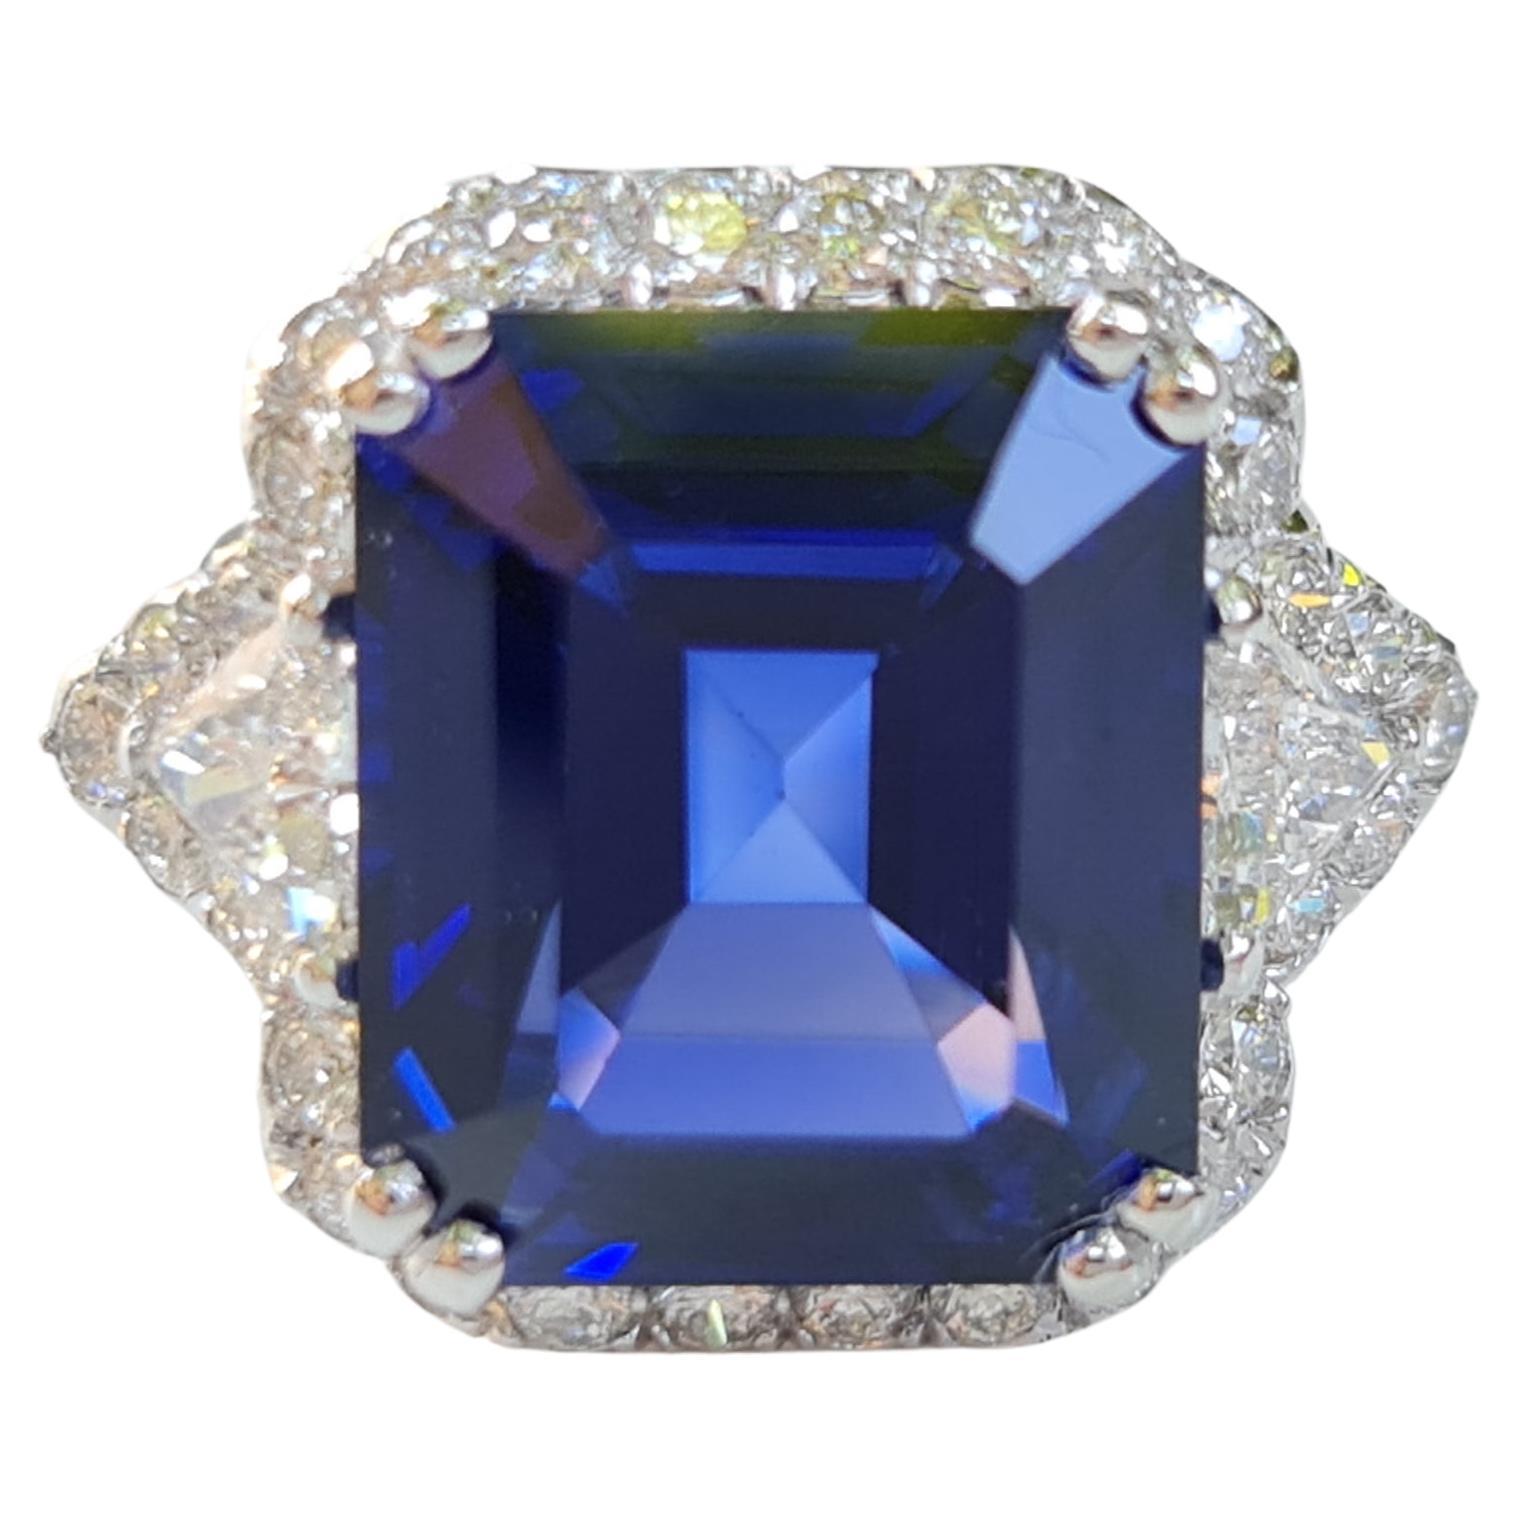 Bague fantaisie en saphir émeraude de 13,70 carats et diamants naturels de 1,20 carat